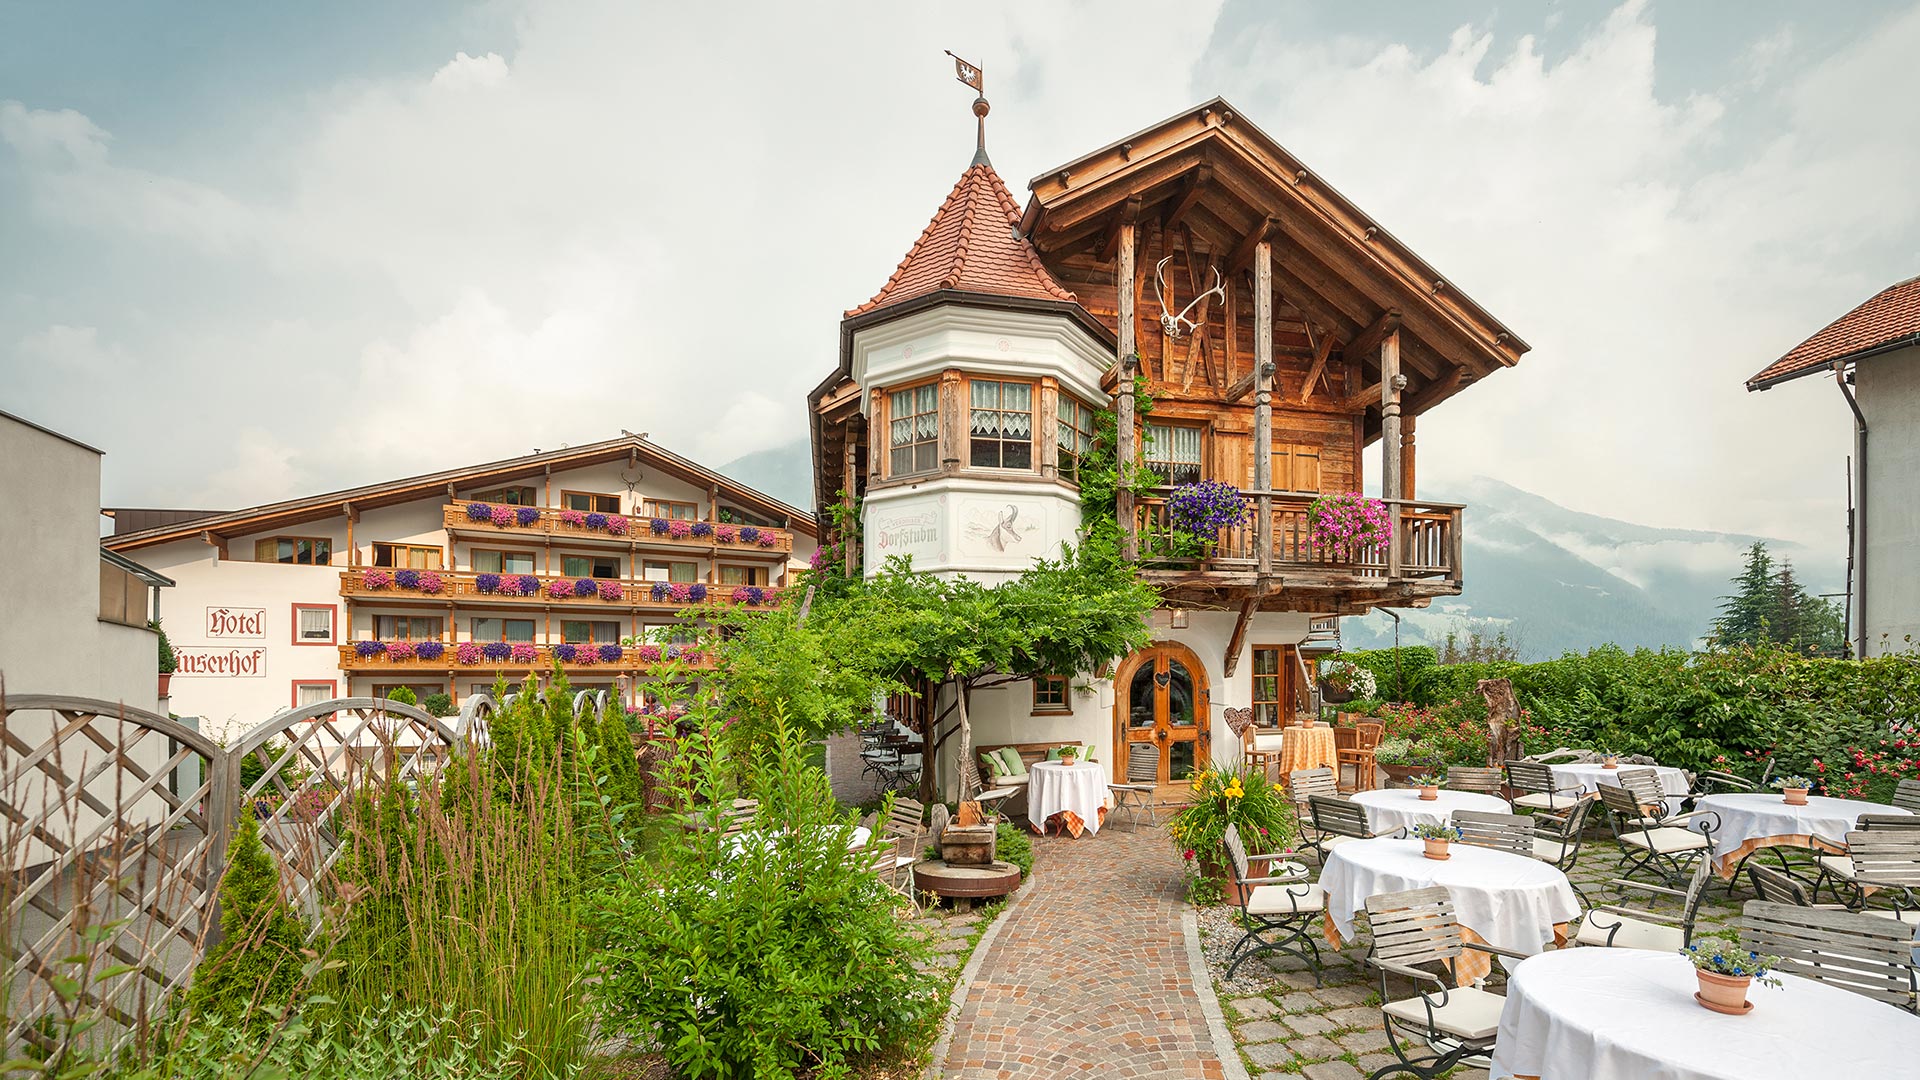 Il Verdinser Hof ospita anche una stube, tipico ristorante a Scena, in cui potrete assaporare la cucina tradizionale e vivere l'ospitalità caratteristica dell'Alto Adige.